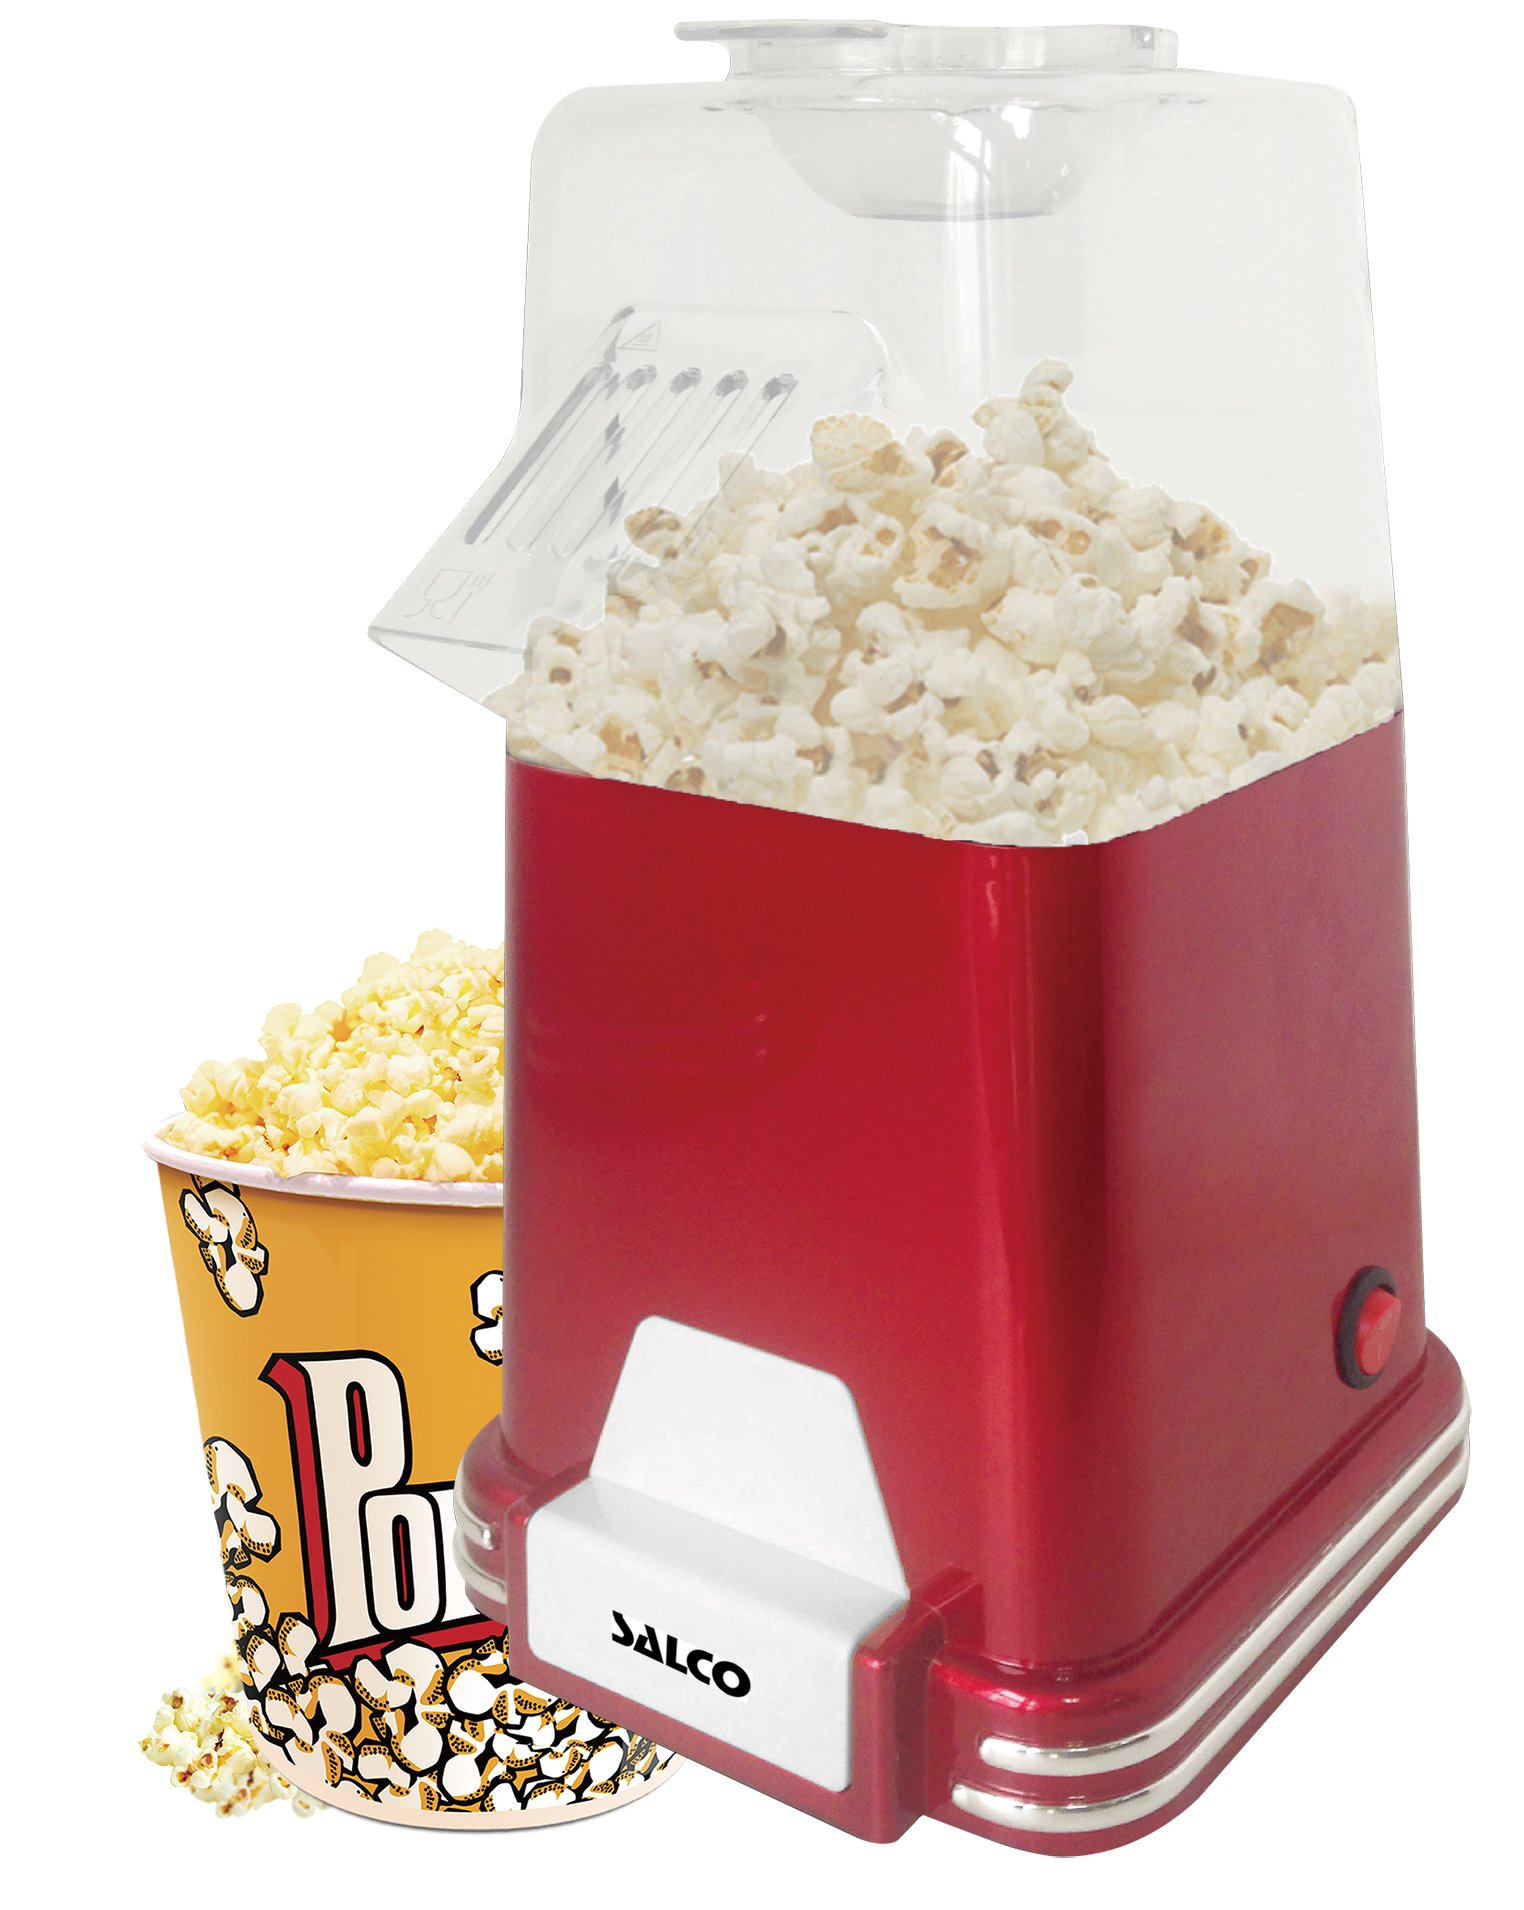 SALCO Popcornmaschine, Popcorn Maker für Zuhause, leistungsstark, OHNE ÖL, fettfreie schnelle Zubereitung mit Heißluft